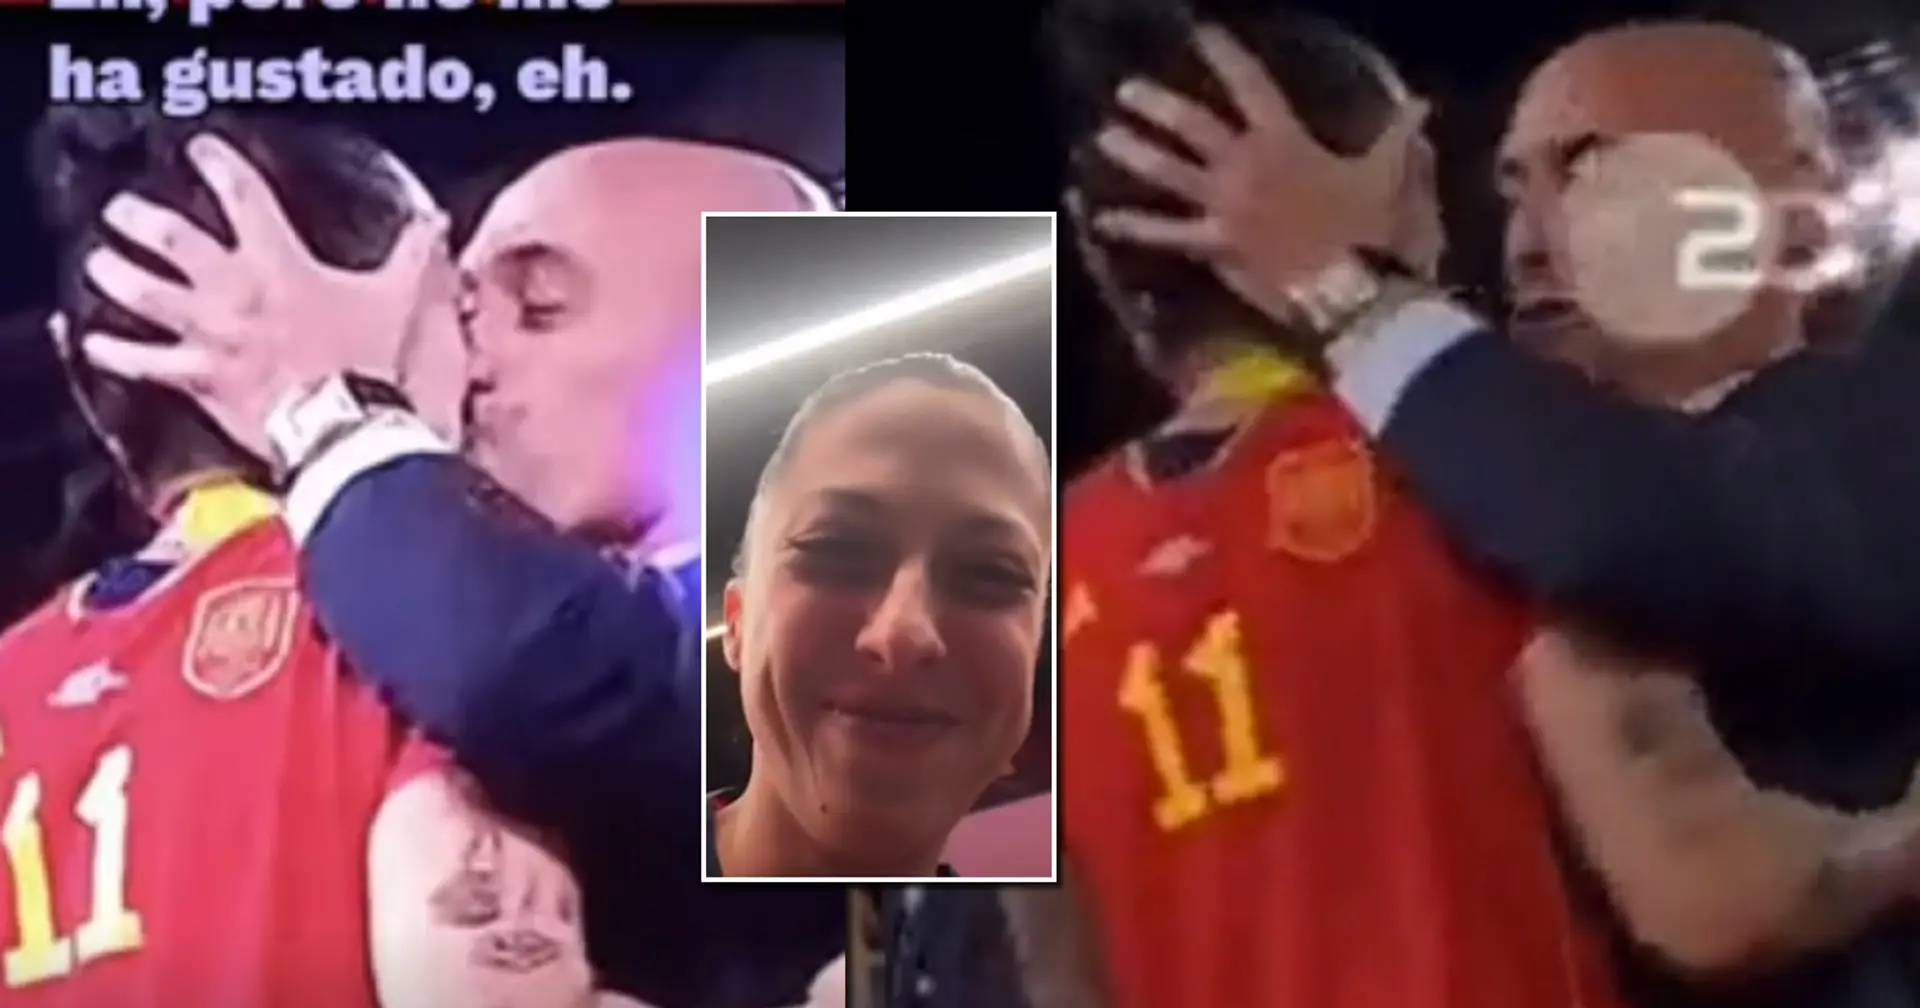 "Das hat mir nicht gefallen": Jenni Hermosos Reaktion auf den Kuss des Präsidenten des Fußballverbandes bei der WM-Siegerehrung